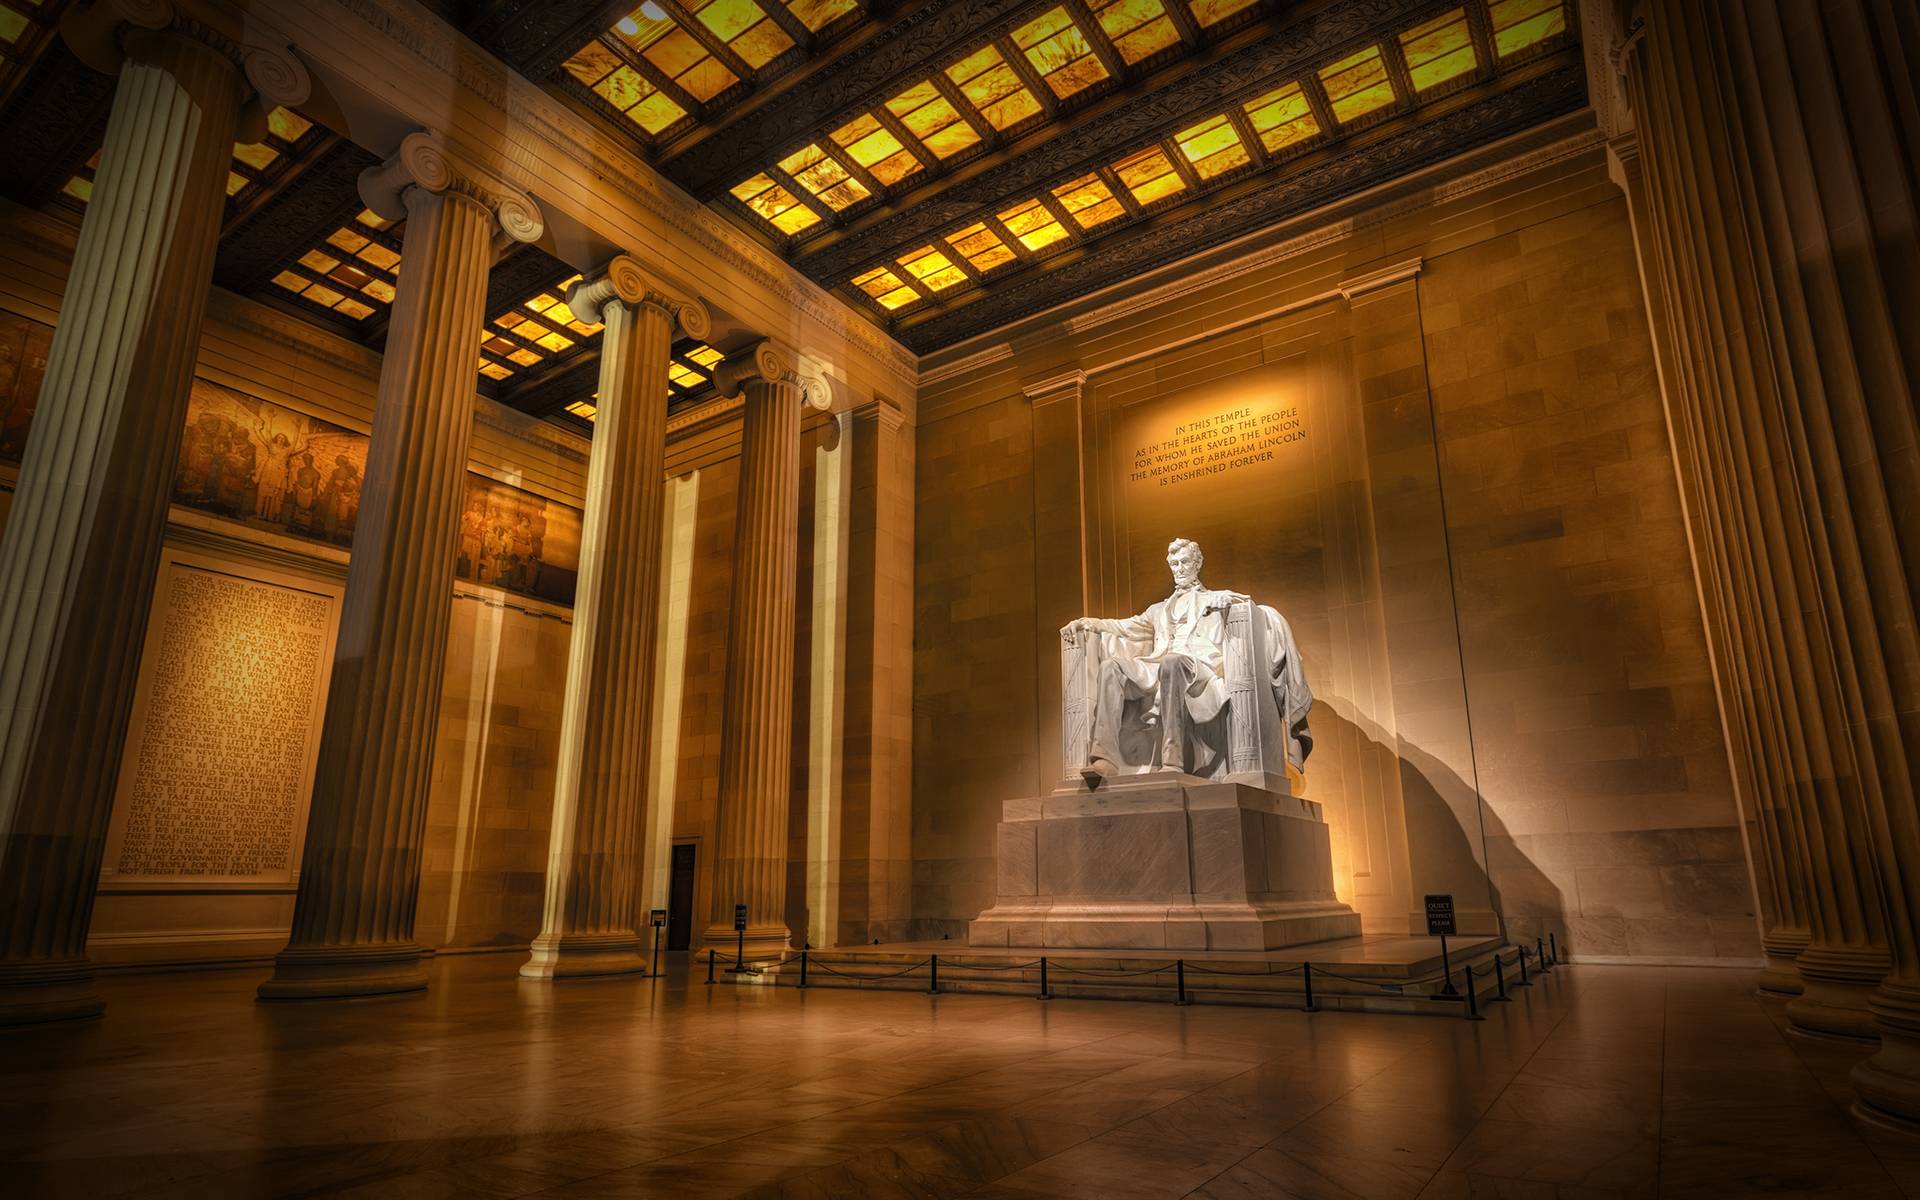 Lincoln Memorial Wallpaper